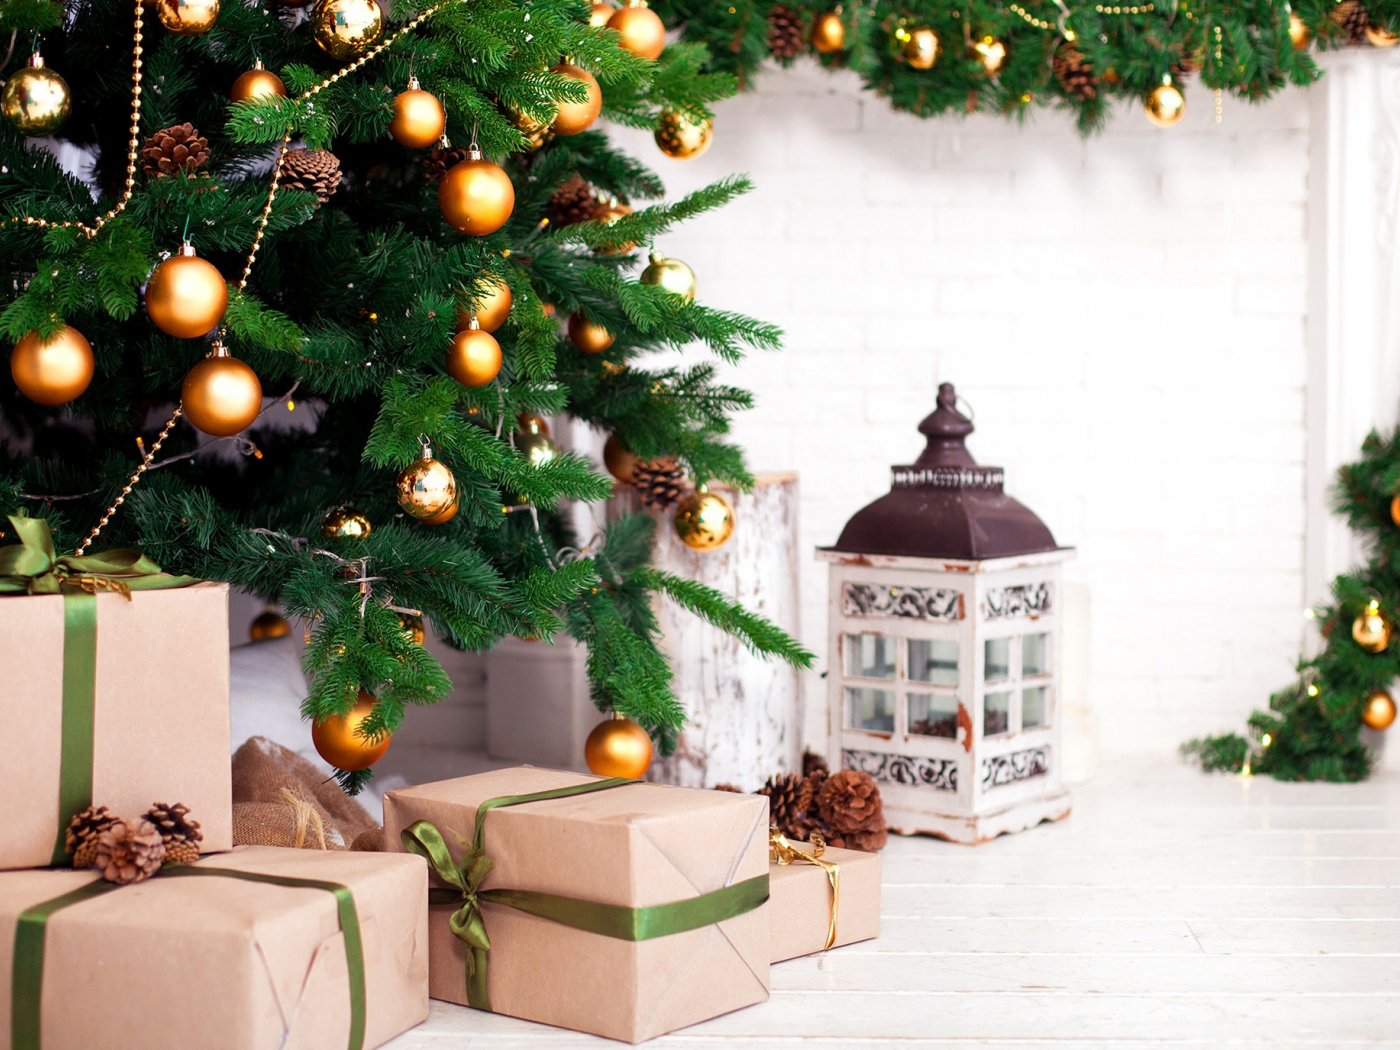 фонарь, шары, новый год, елка, 2018, шишки, игрушки, украшения, подарки